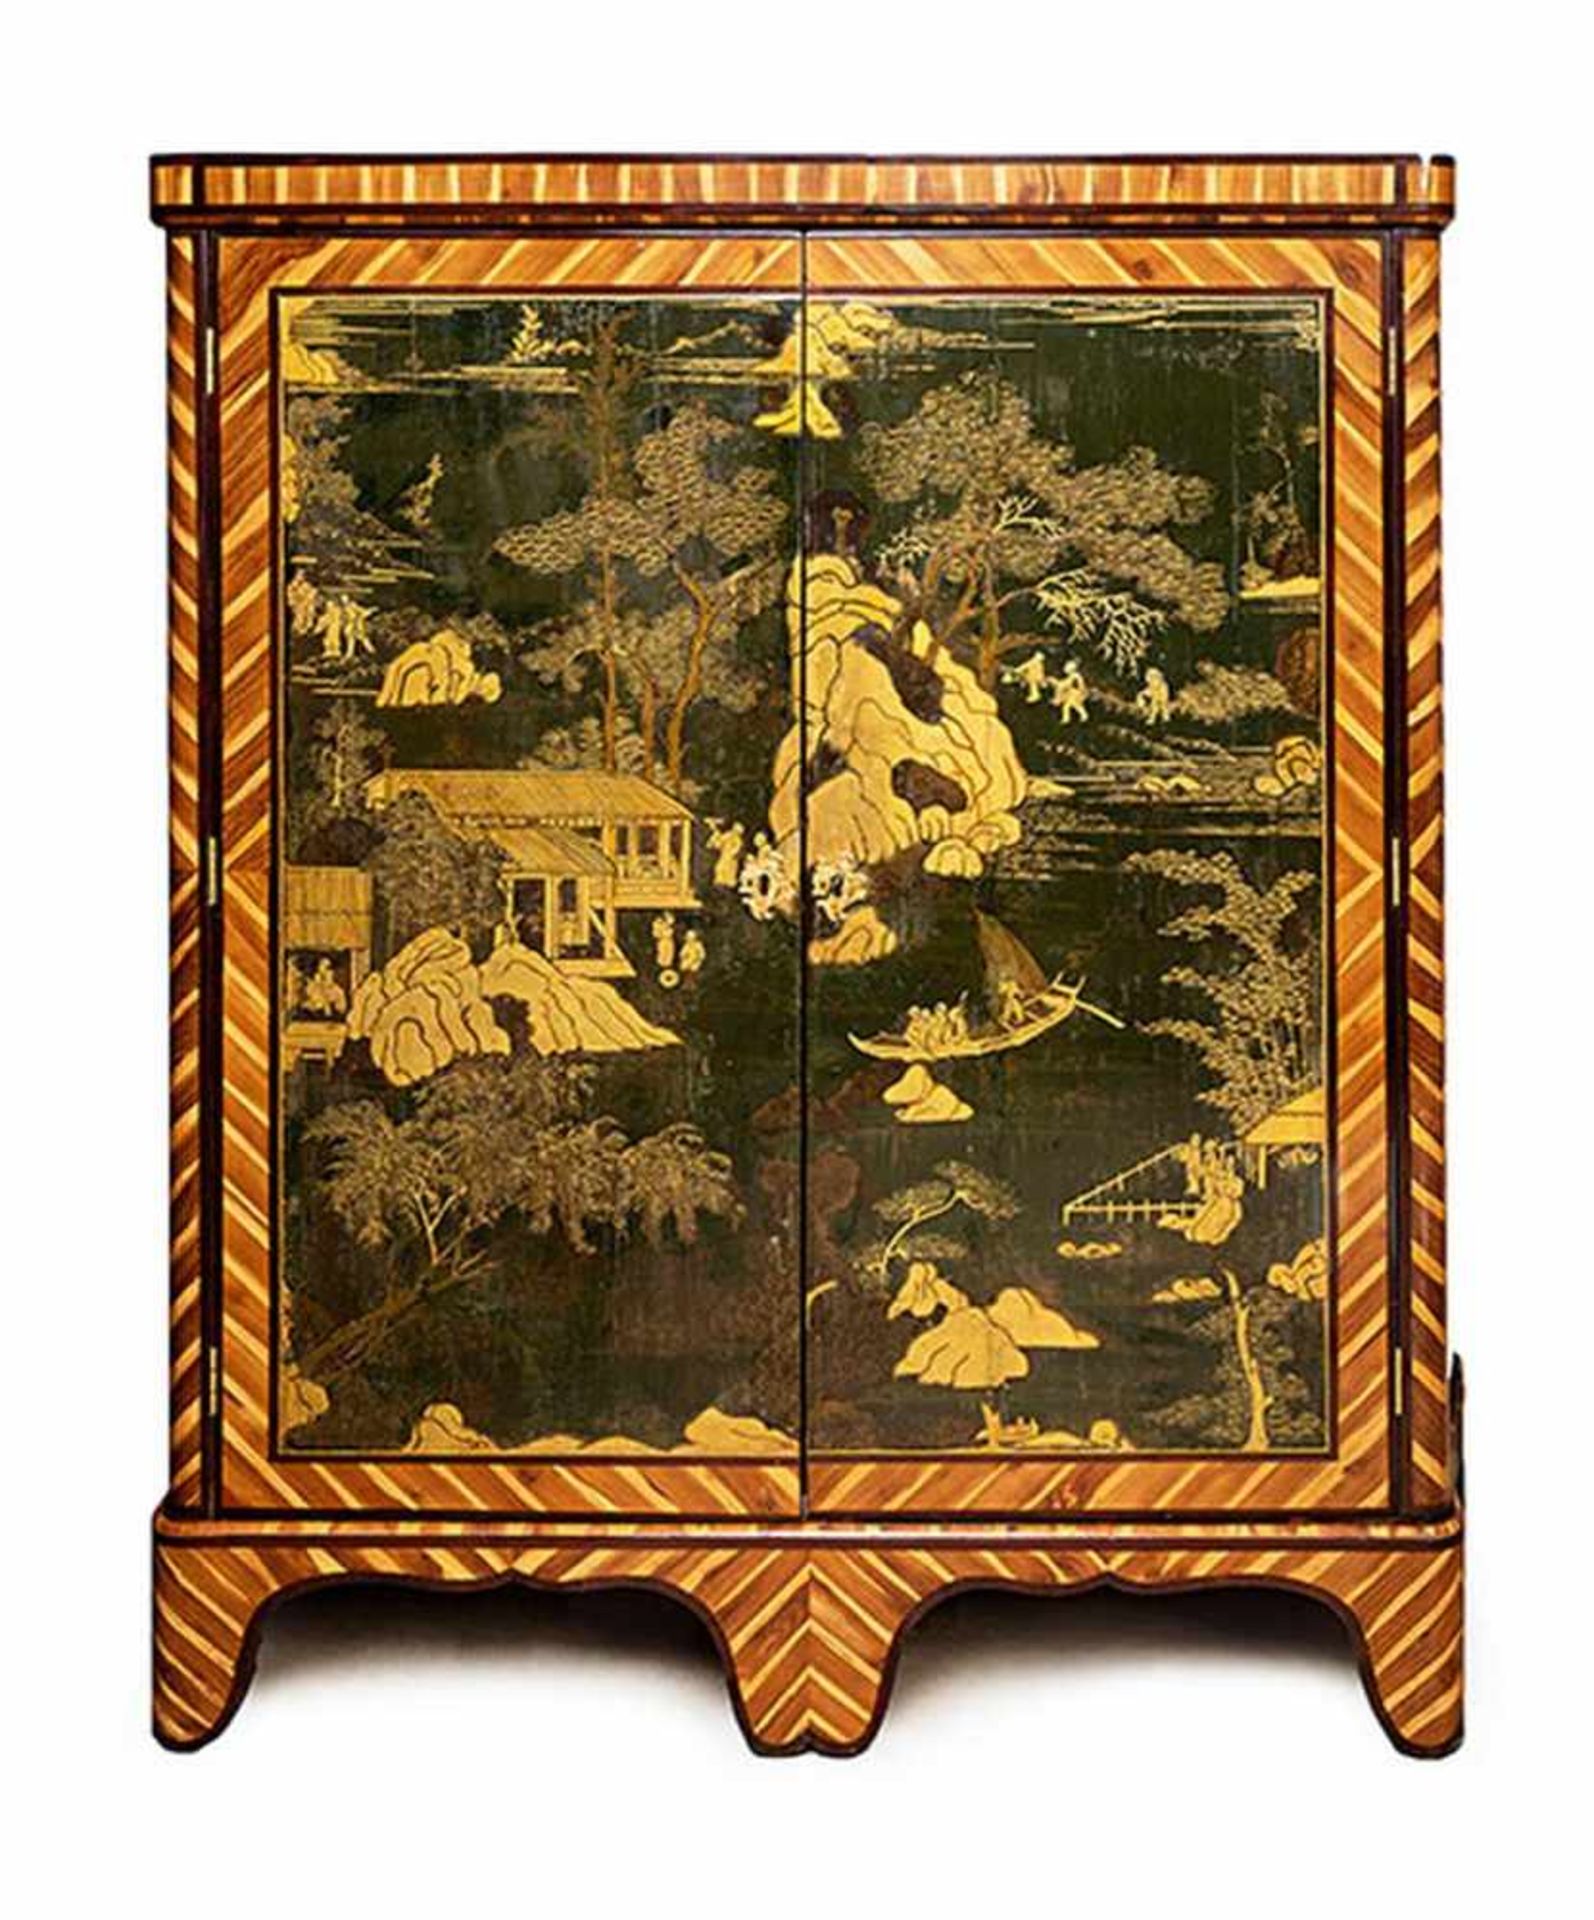 Chinoiserie Schränkchen 147 x 140 x 40 cm. Frankreich, 18. Jahrhundert. Holz, gefasst, lackiert. - Bild 3 aus 3